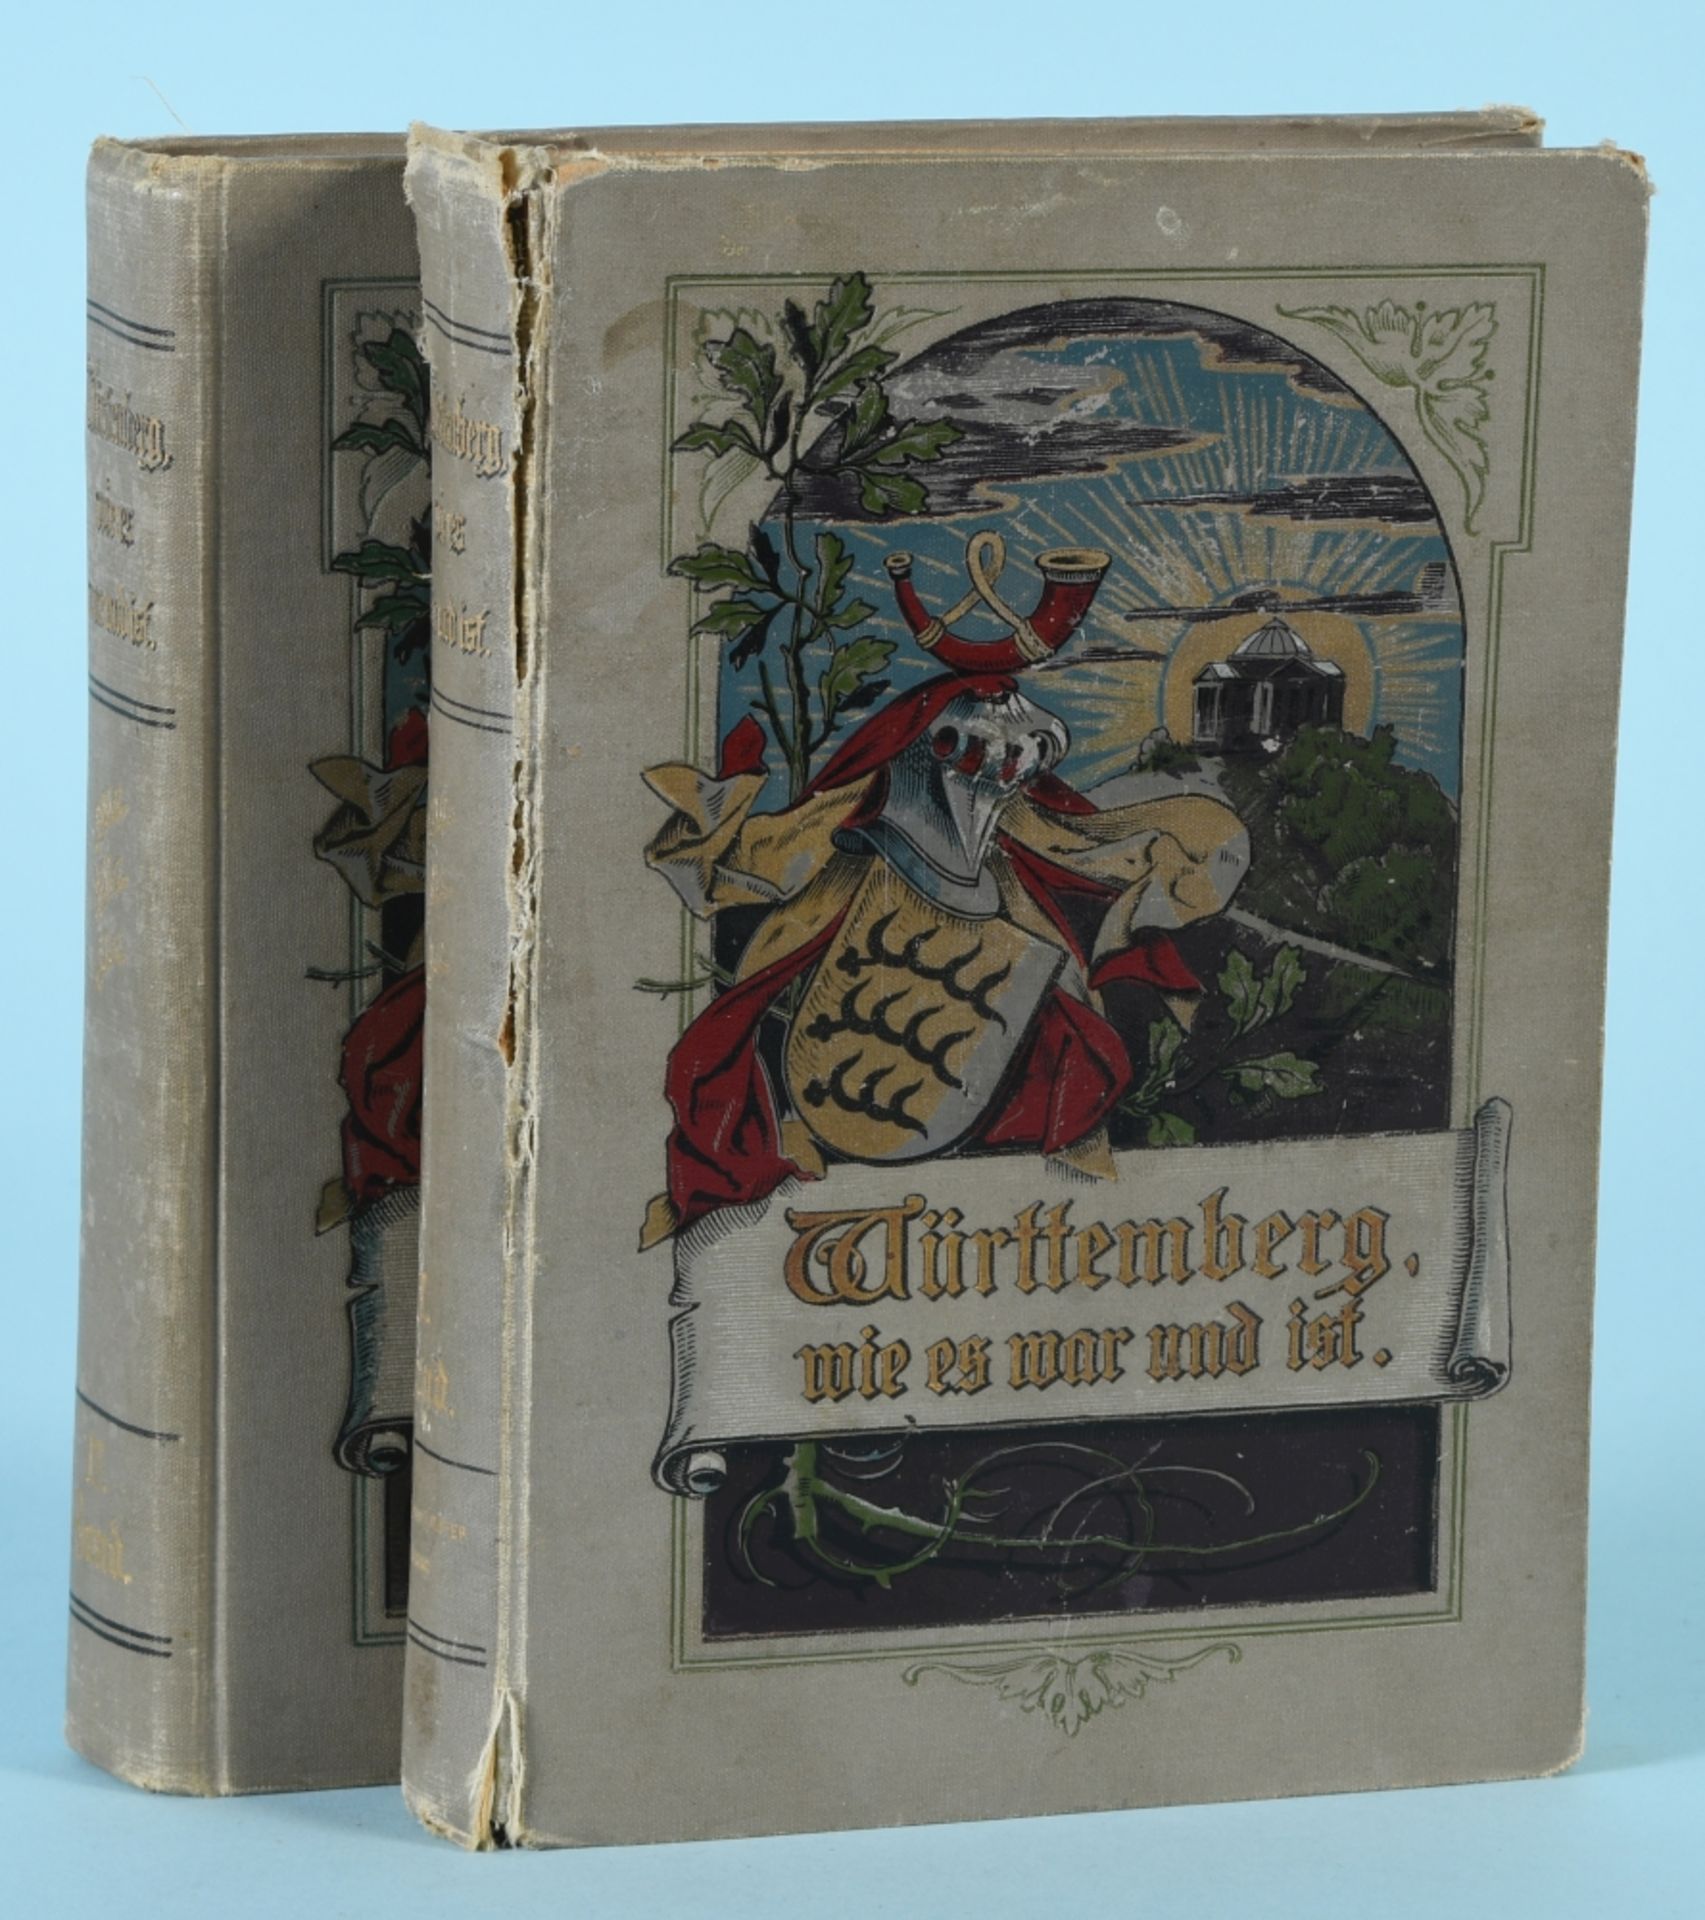 Weitbrecht, Carl "Württemberg - Wie es war und ist", 2 Bände